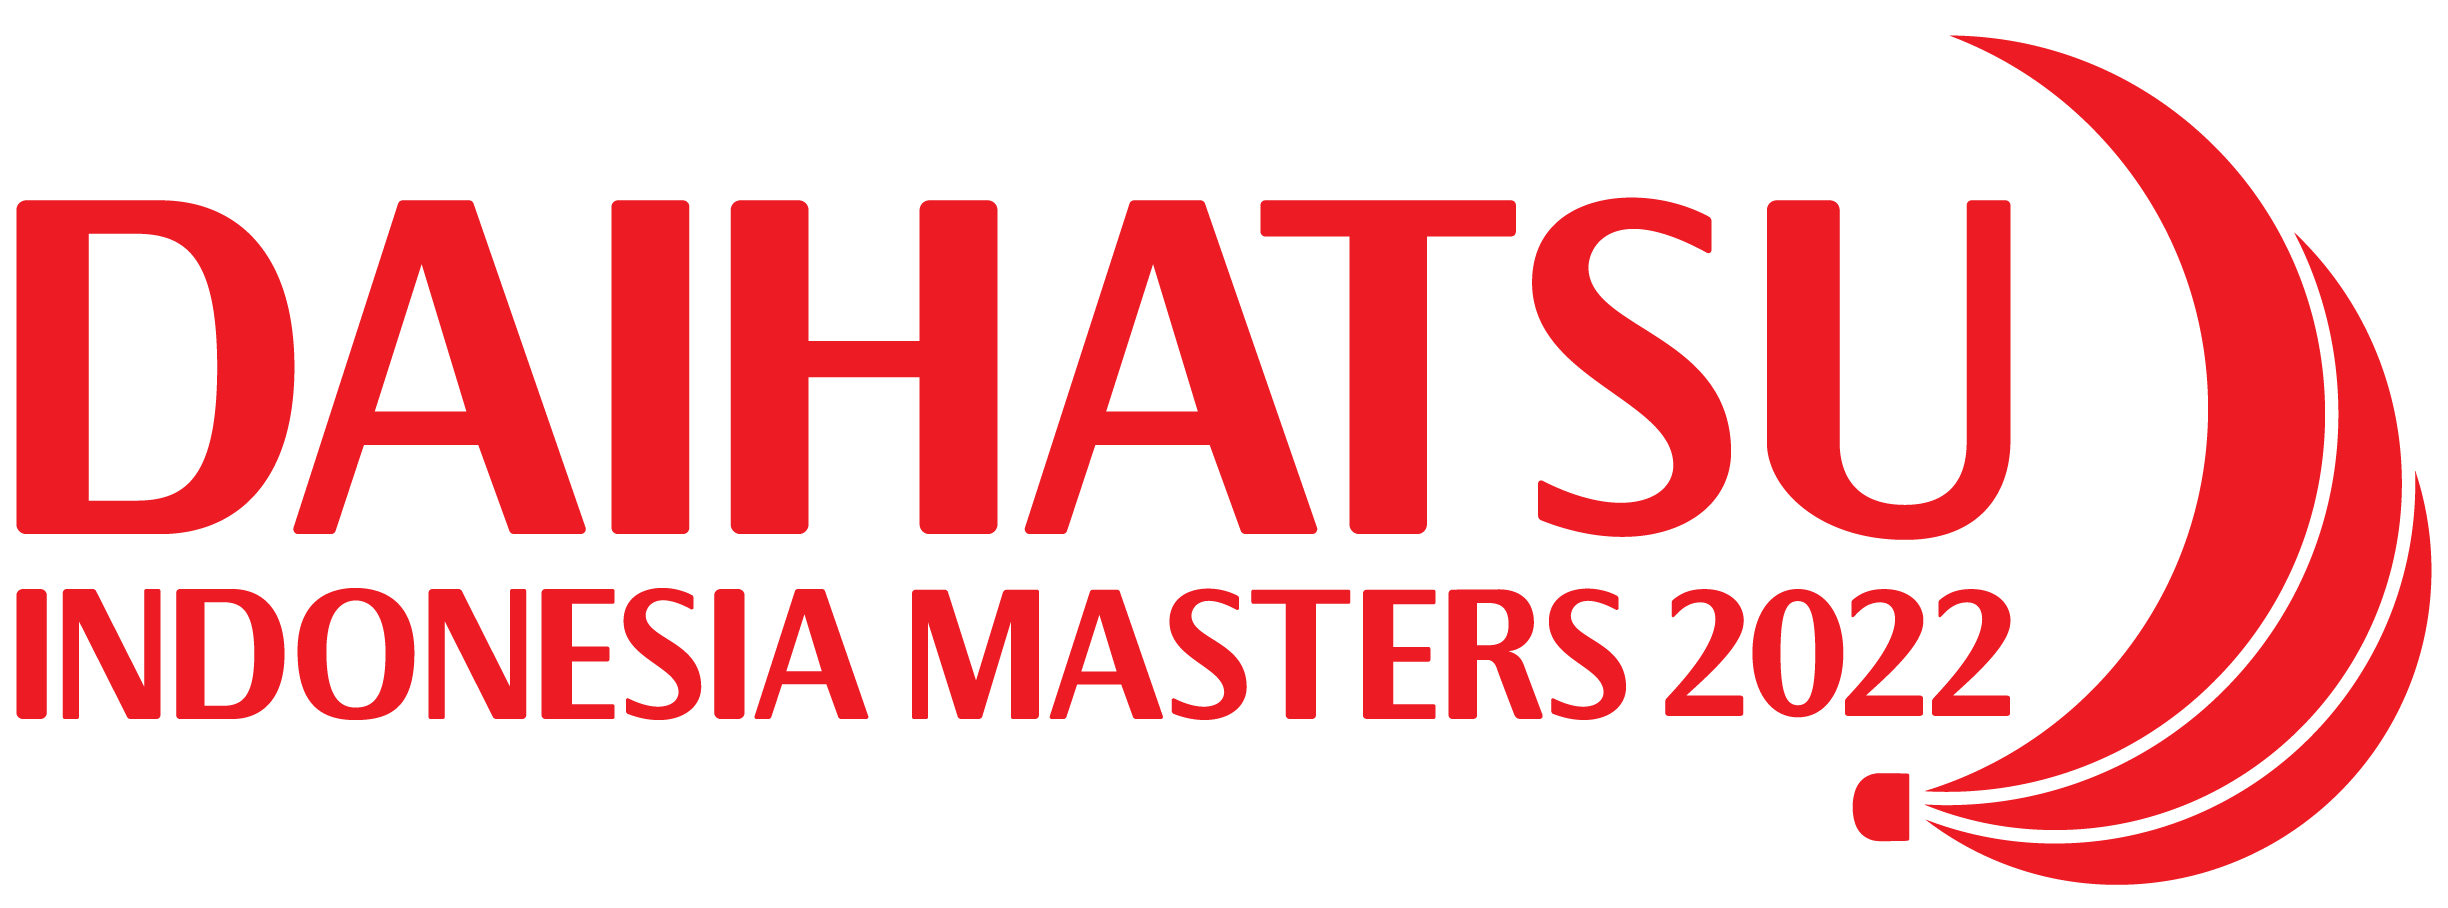 Mobil Baru, Logo Daihatsu Indonesia Masters 2022: Daihatsu Indonesia Masters 2022 Siap Digelar Pada 7-12 Juni 2022 di Istora Senayan Jakarta